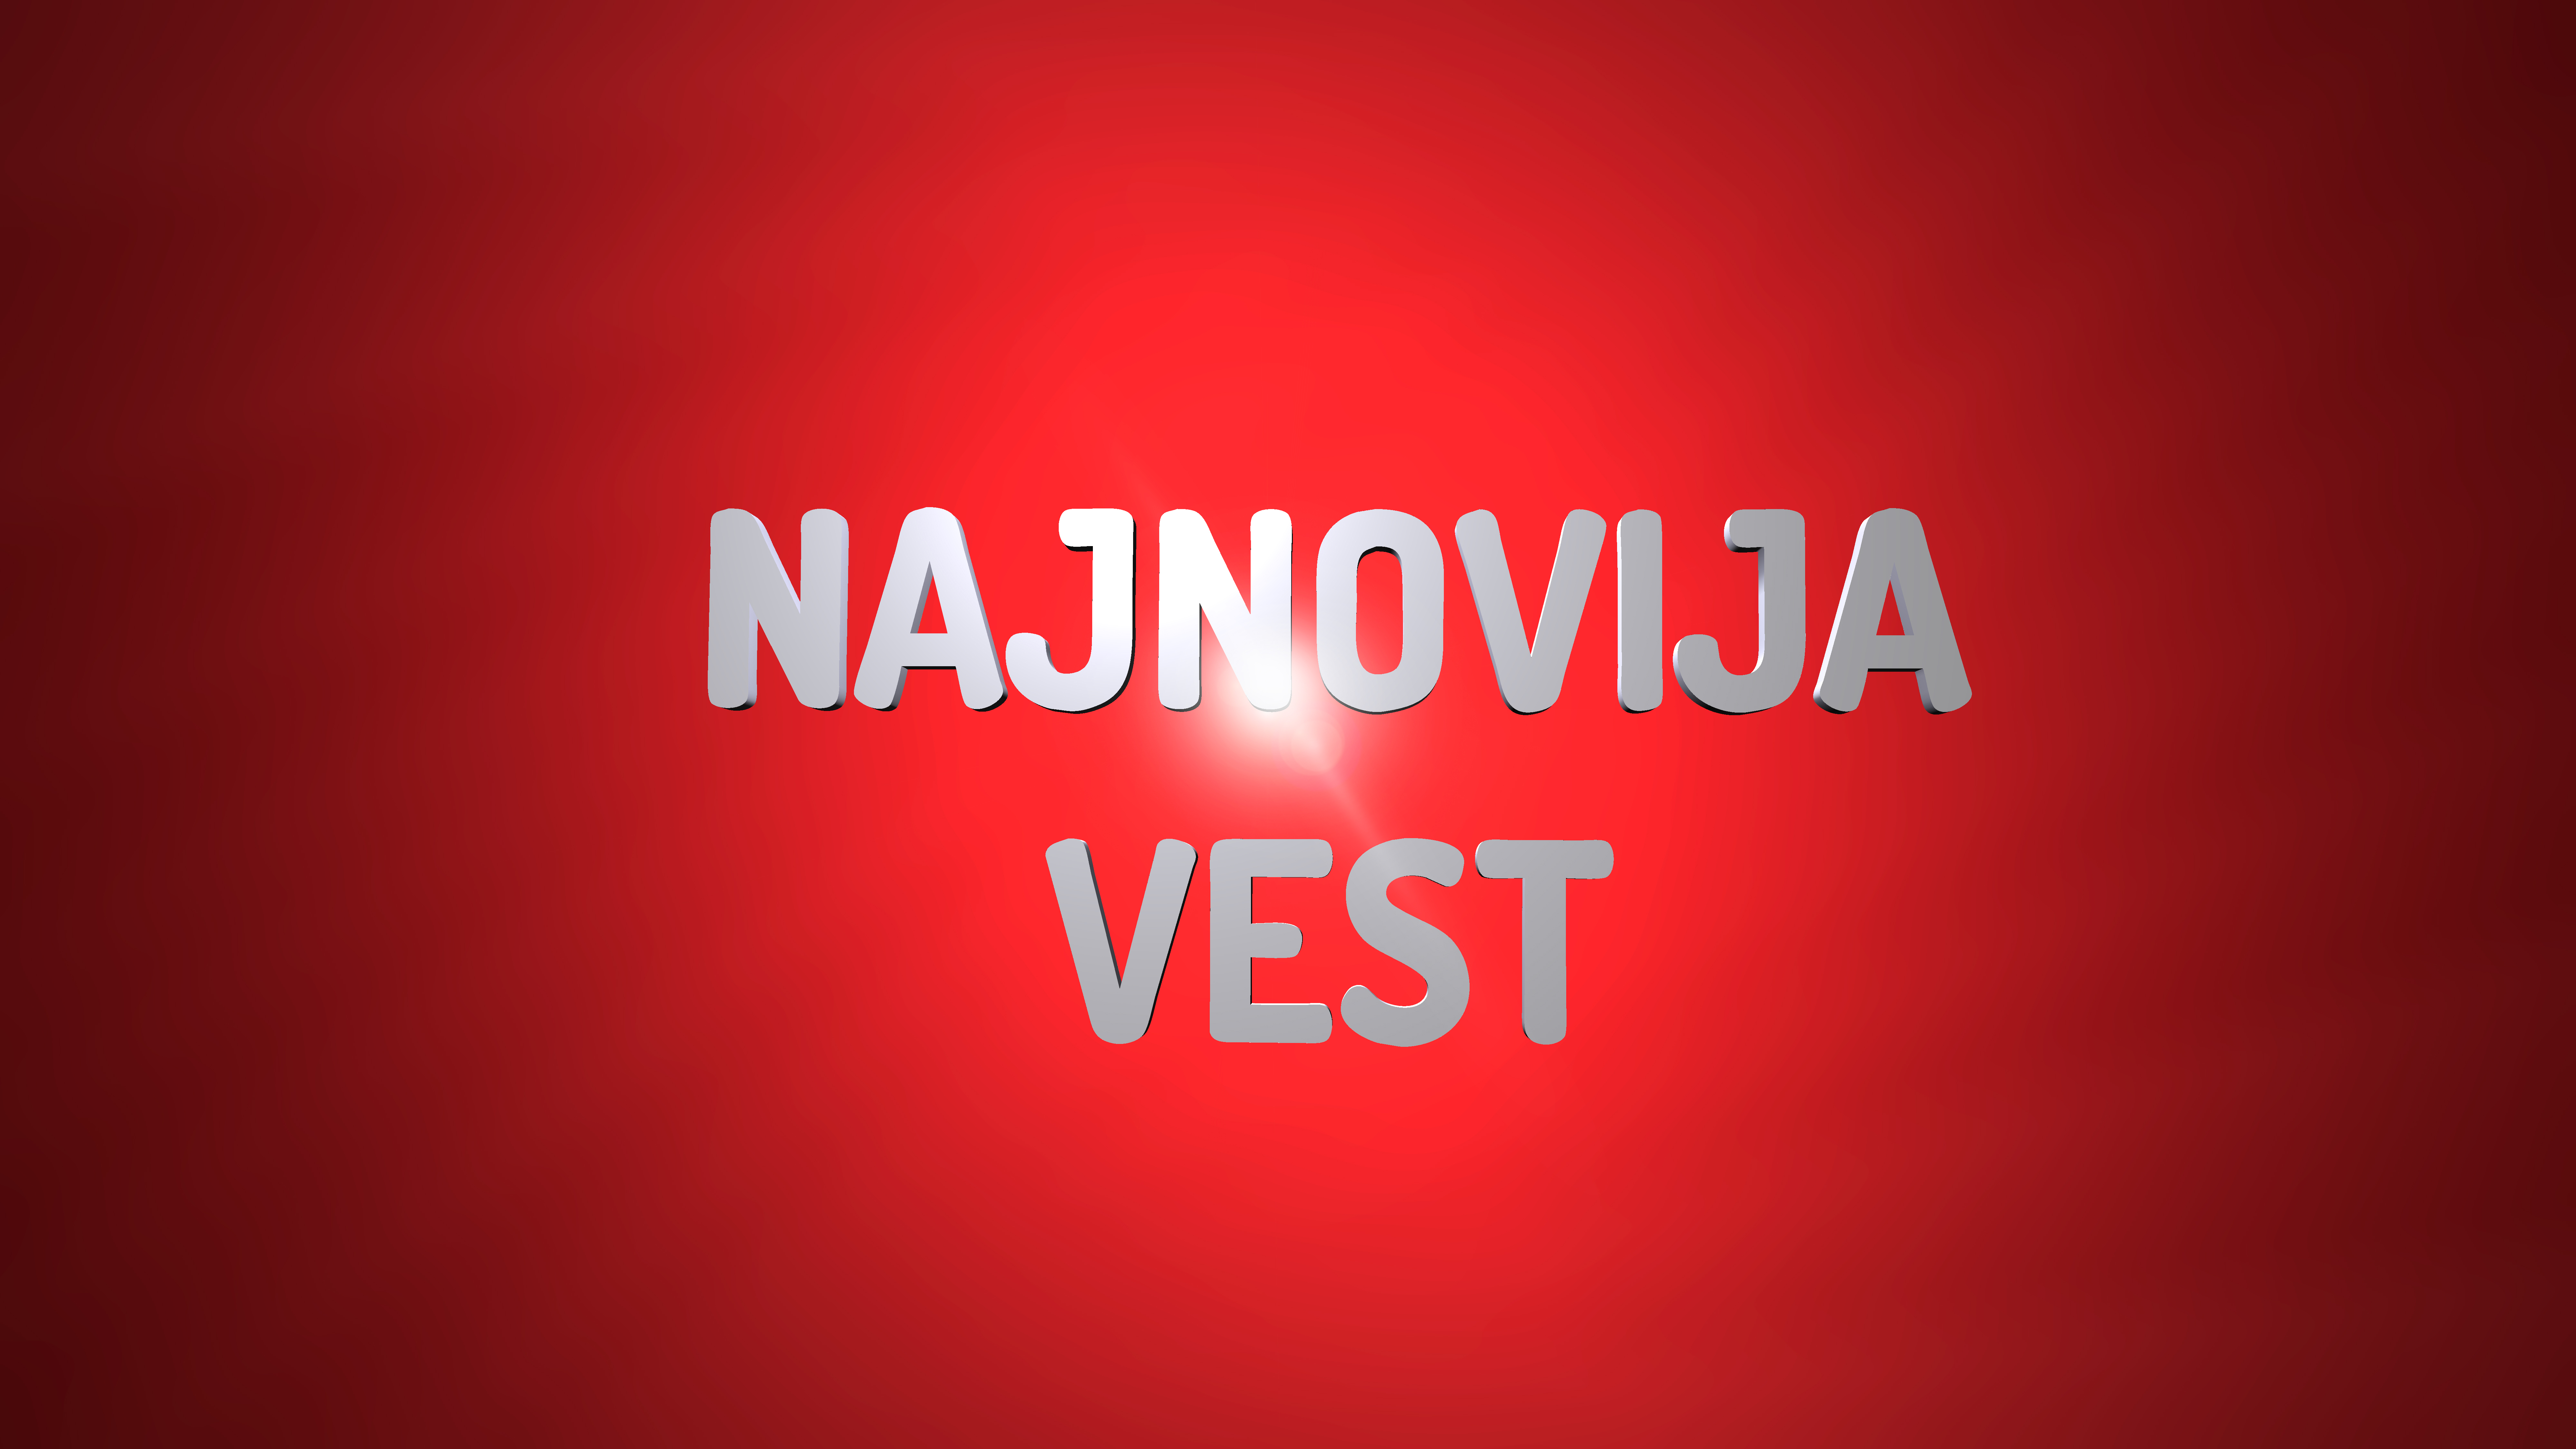 Najnovija vest, foto: Prva.rs